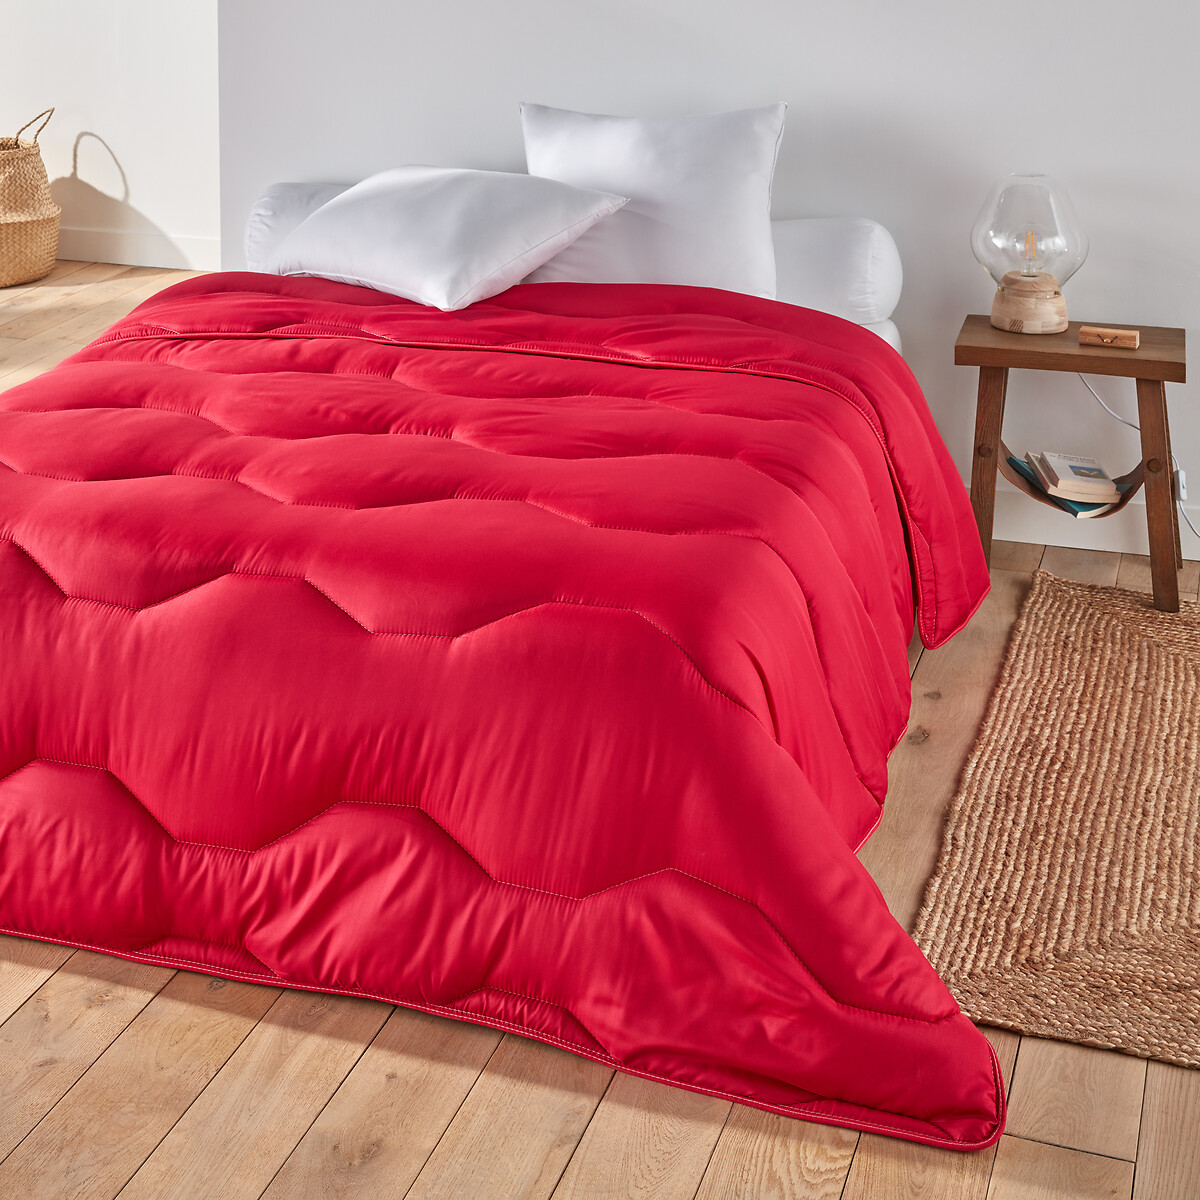 Одеяло La Redoute Rverie Color  гм 260 x 240 см красный, размер 260 x 240 см - фото 1